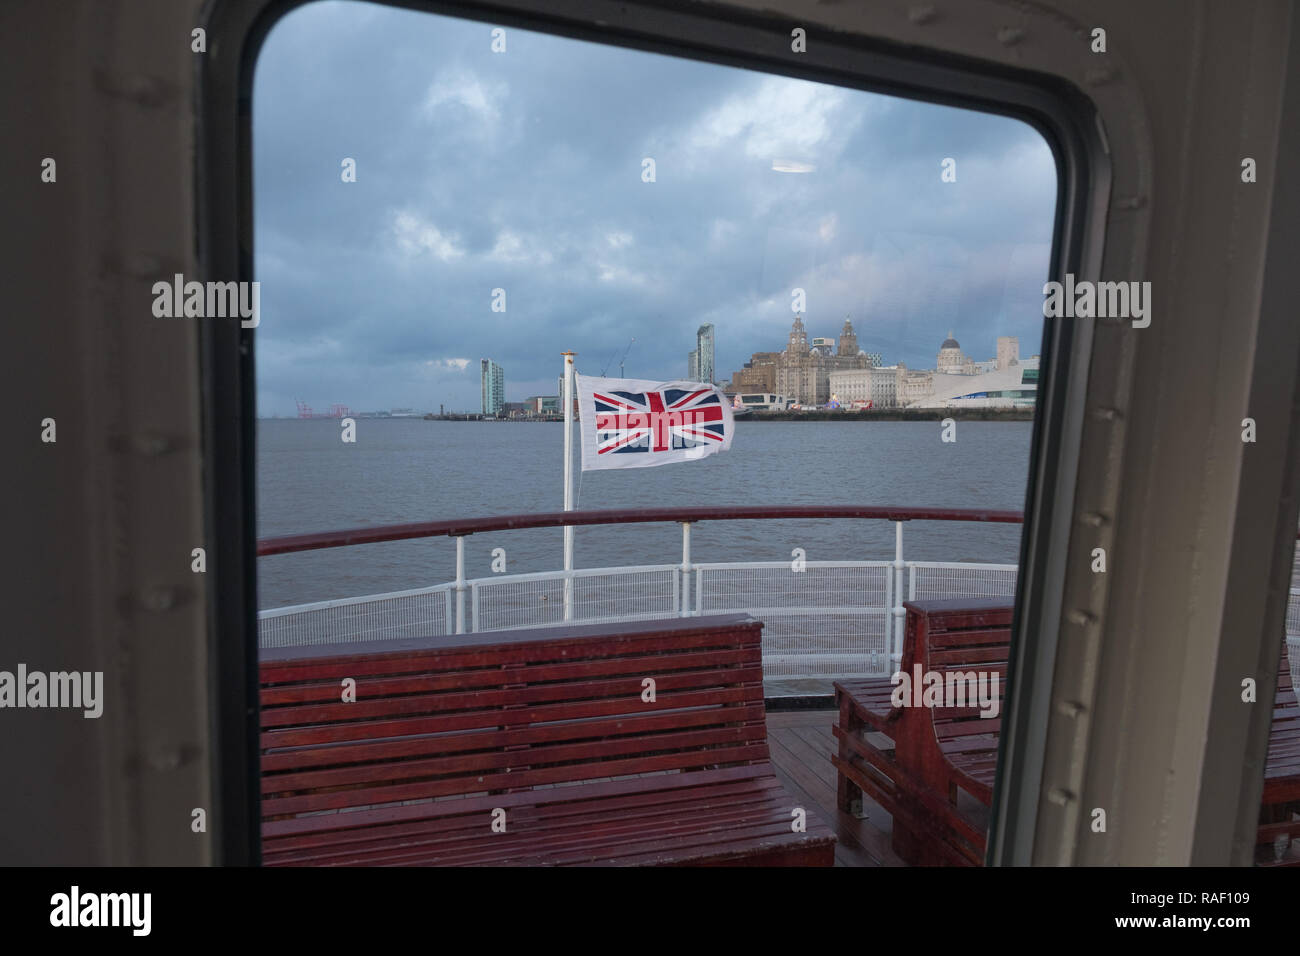 Vue sur le Royal Liver Building et l'Union Jack flag du Royal Iris ferry, Mersey, Liverpool Banque D'Images